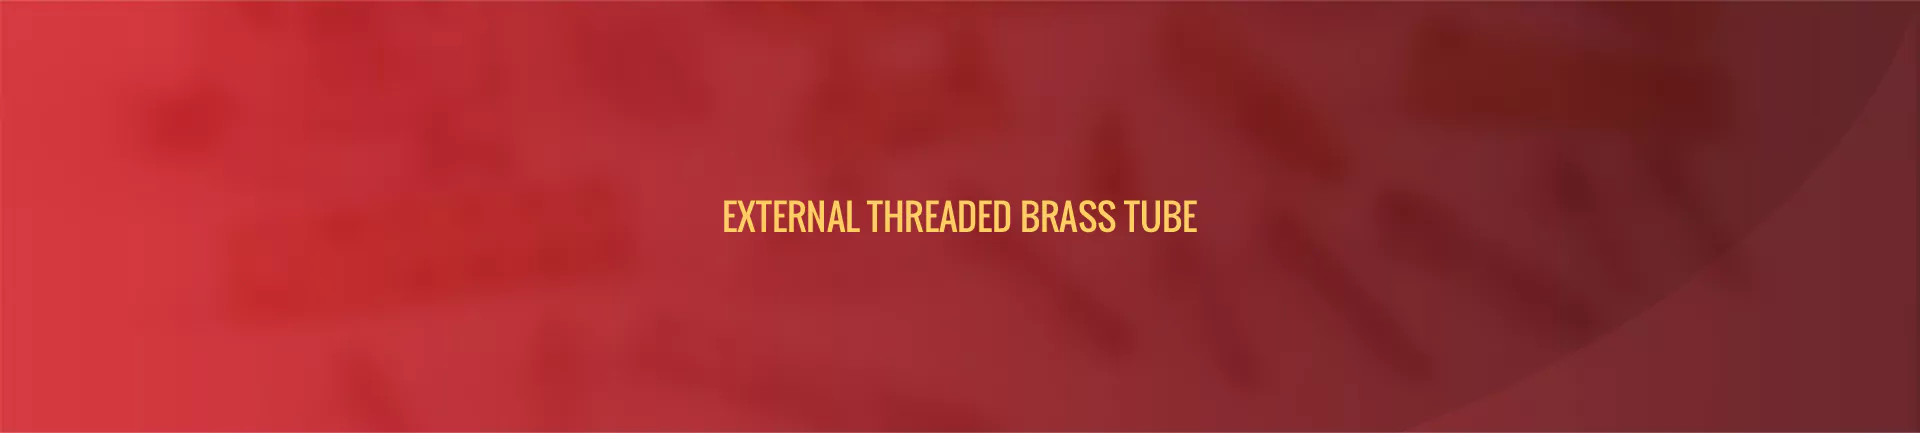 external_threaded_brass_tube-banner